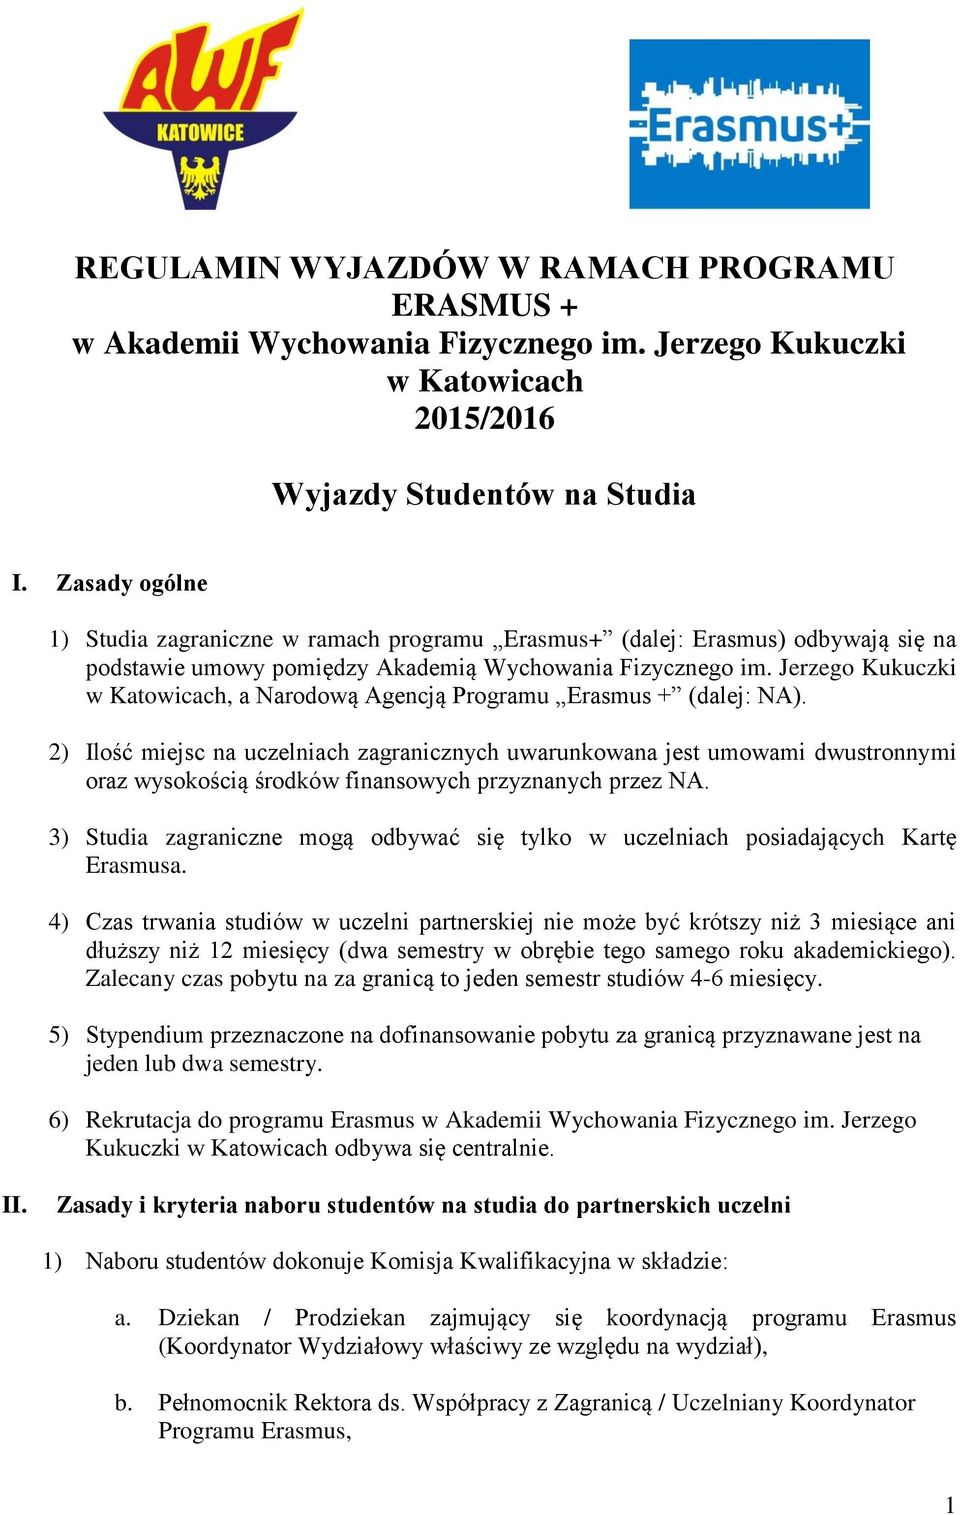 Jerzego Kukuczki w Katowicach, a Narodową Agencją Programu Erasmus + (dalej: NA).